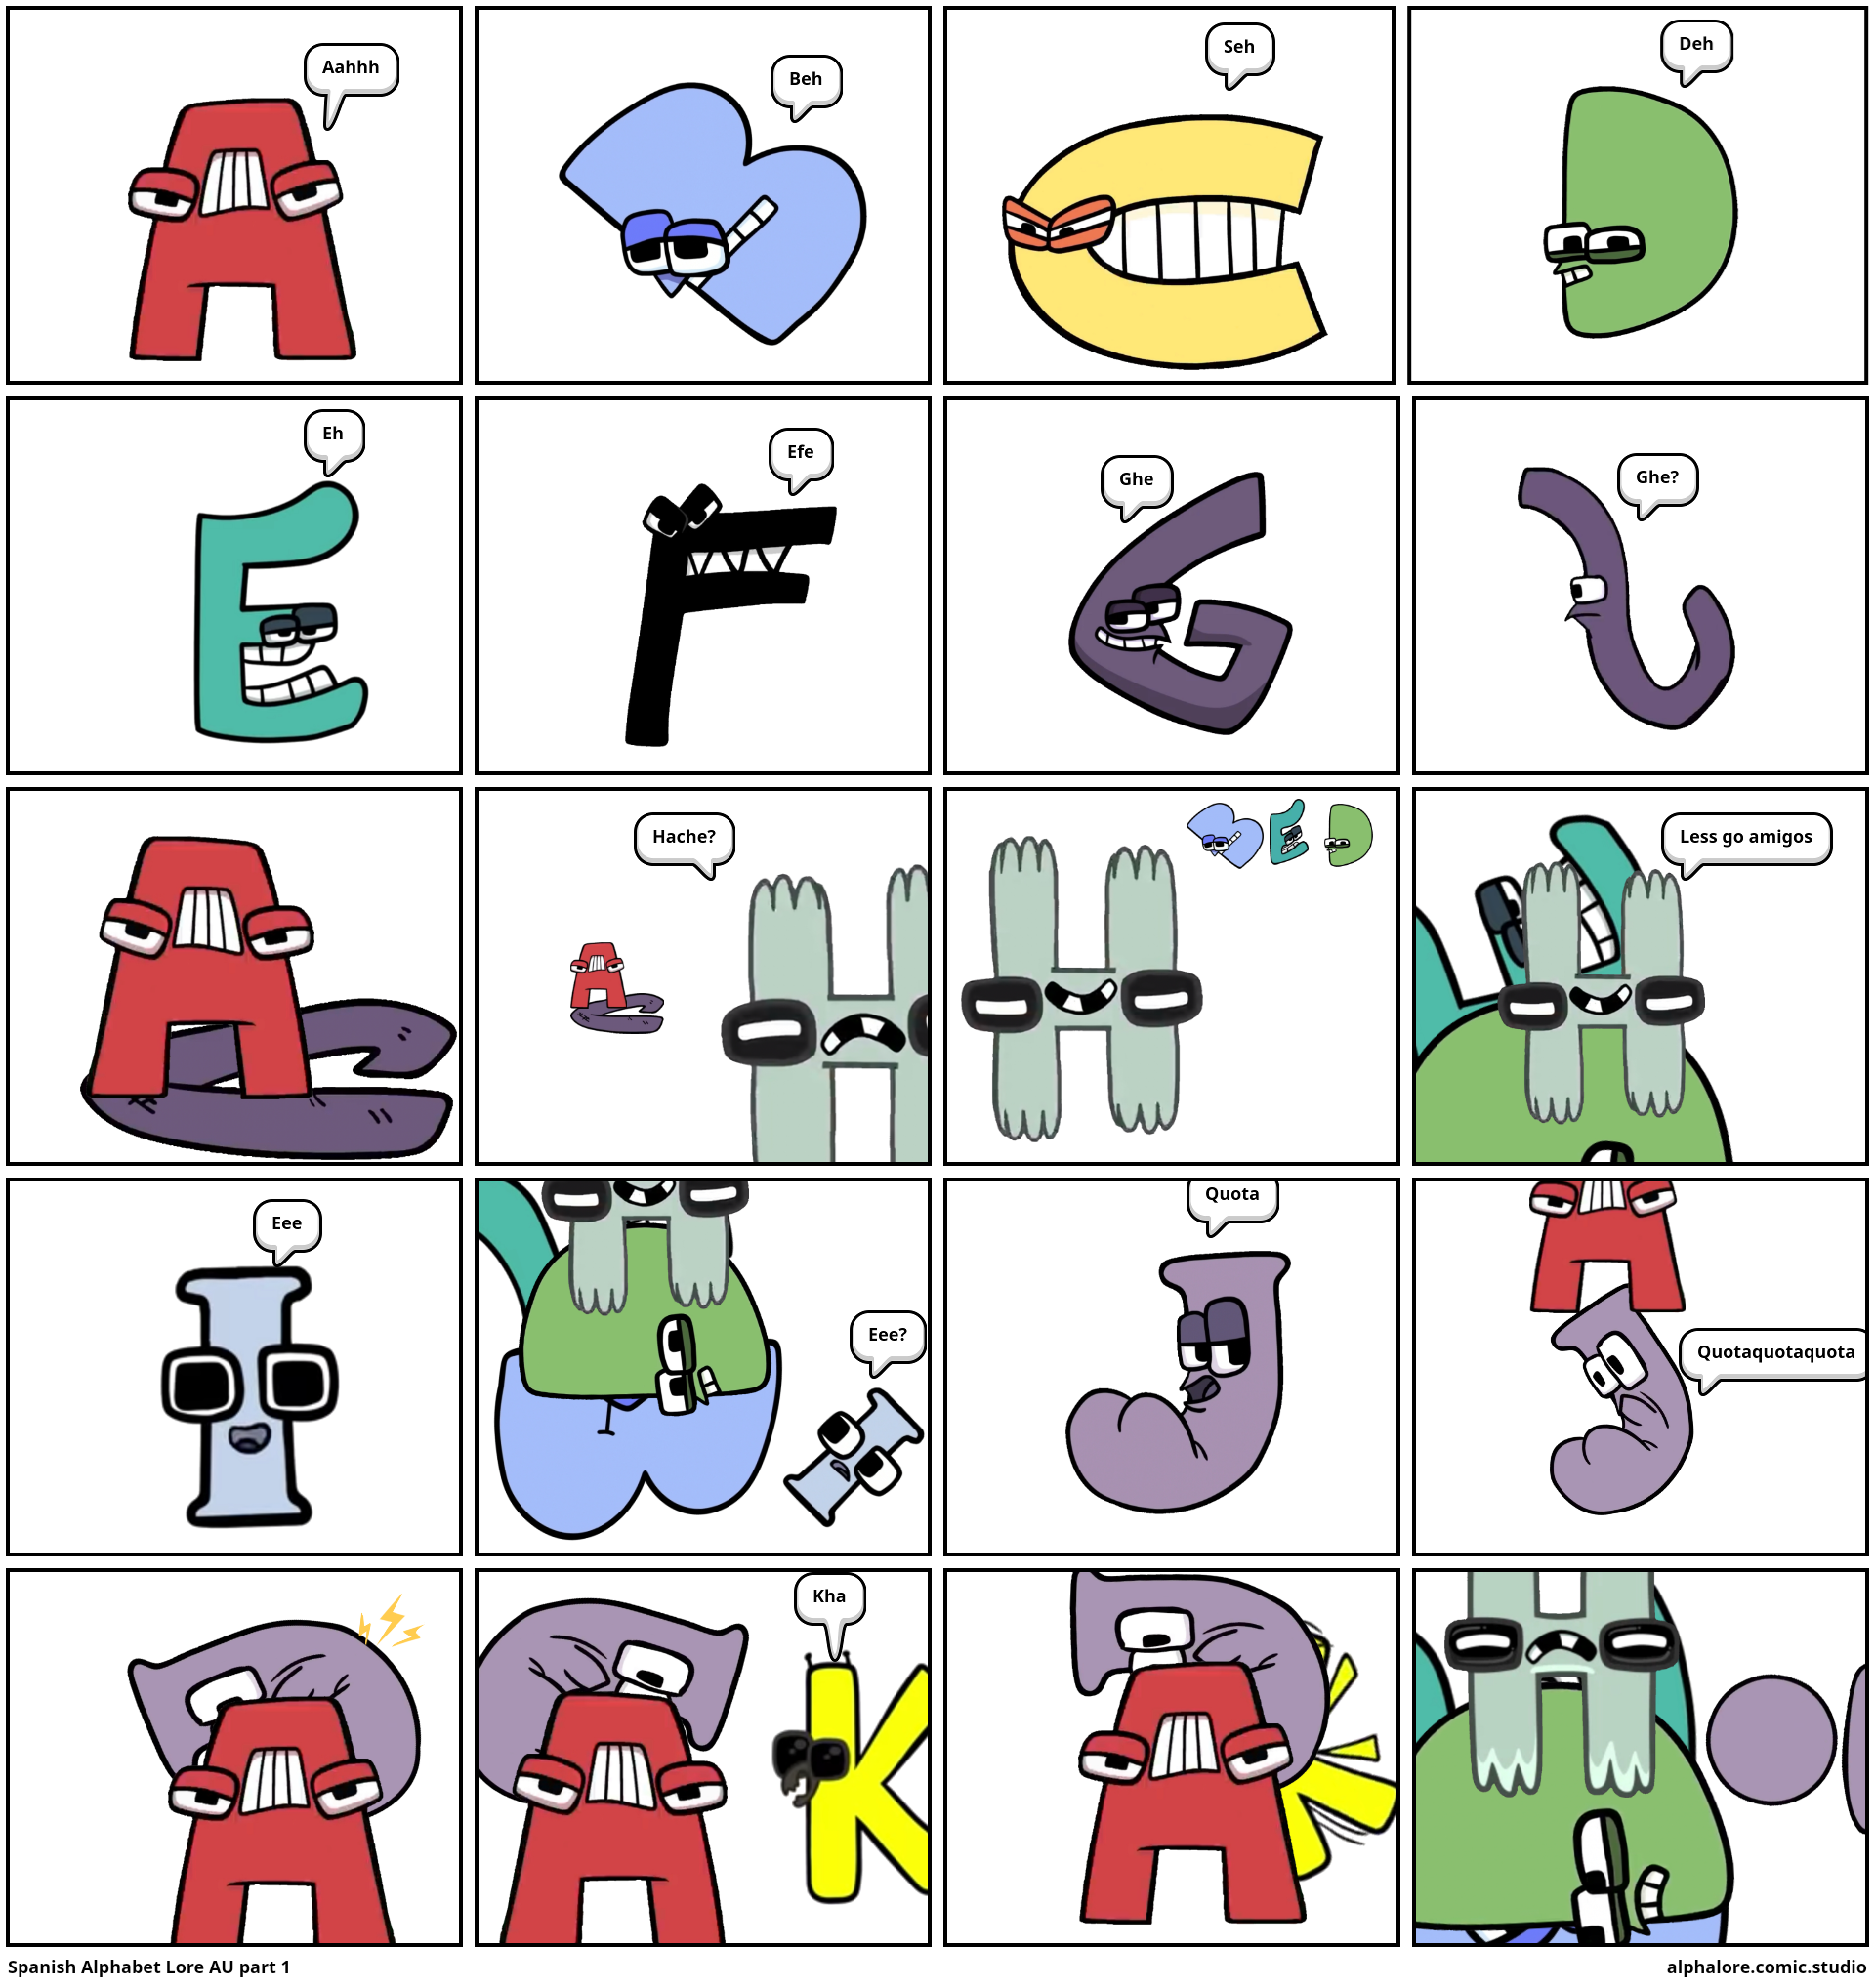 Spanish Alphabet Lore AU part 1 - Comic Studio